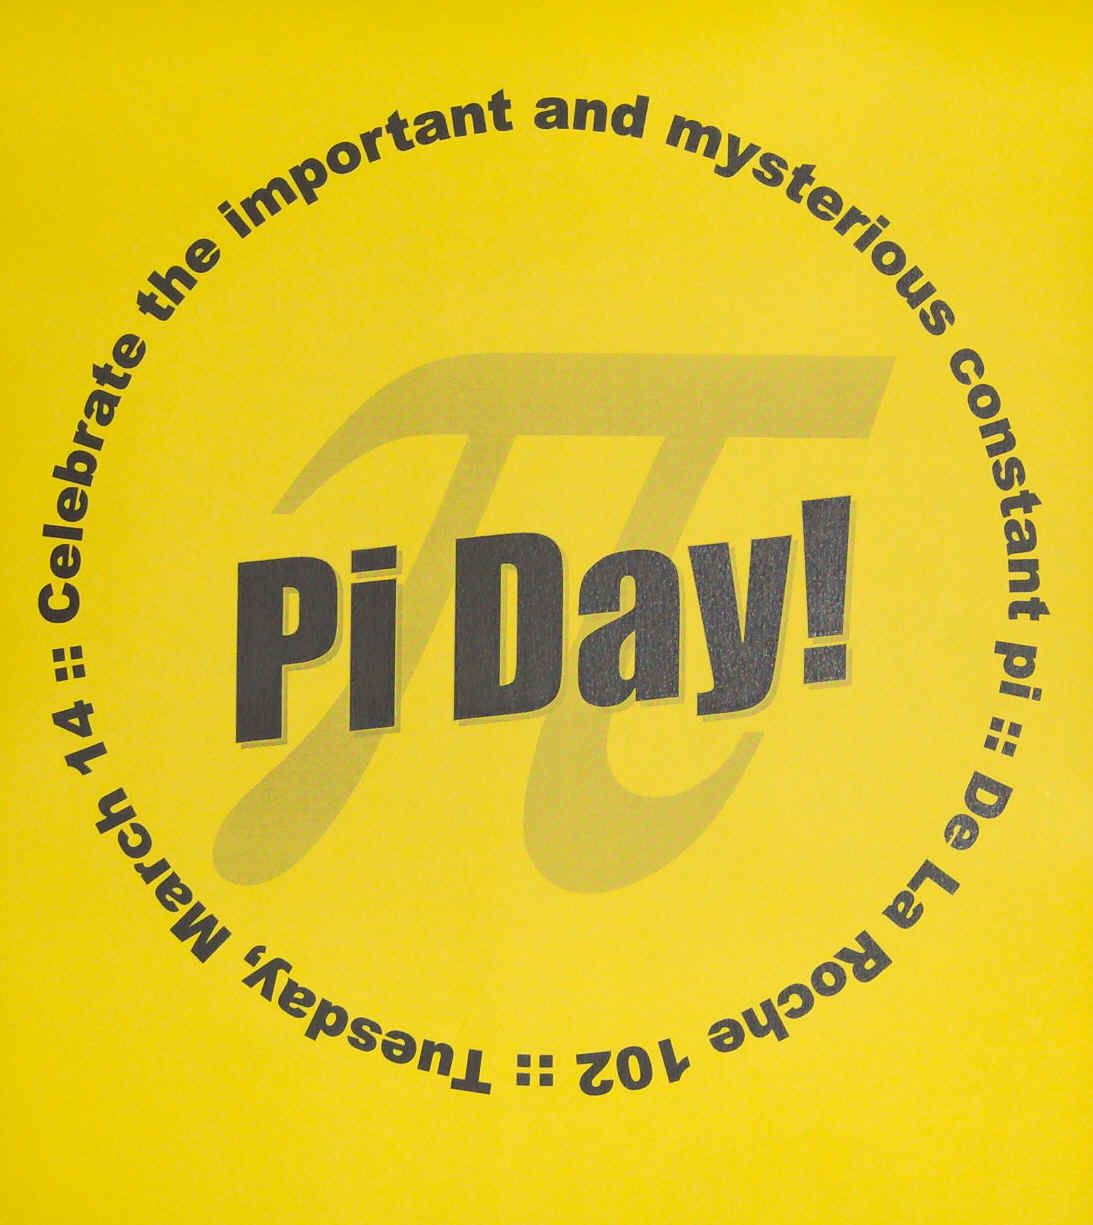 logo du pi day